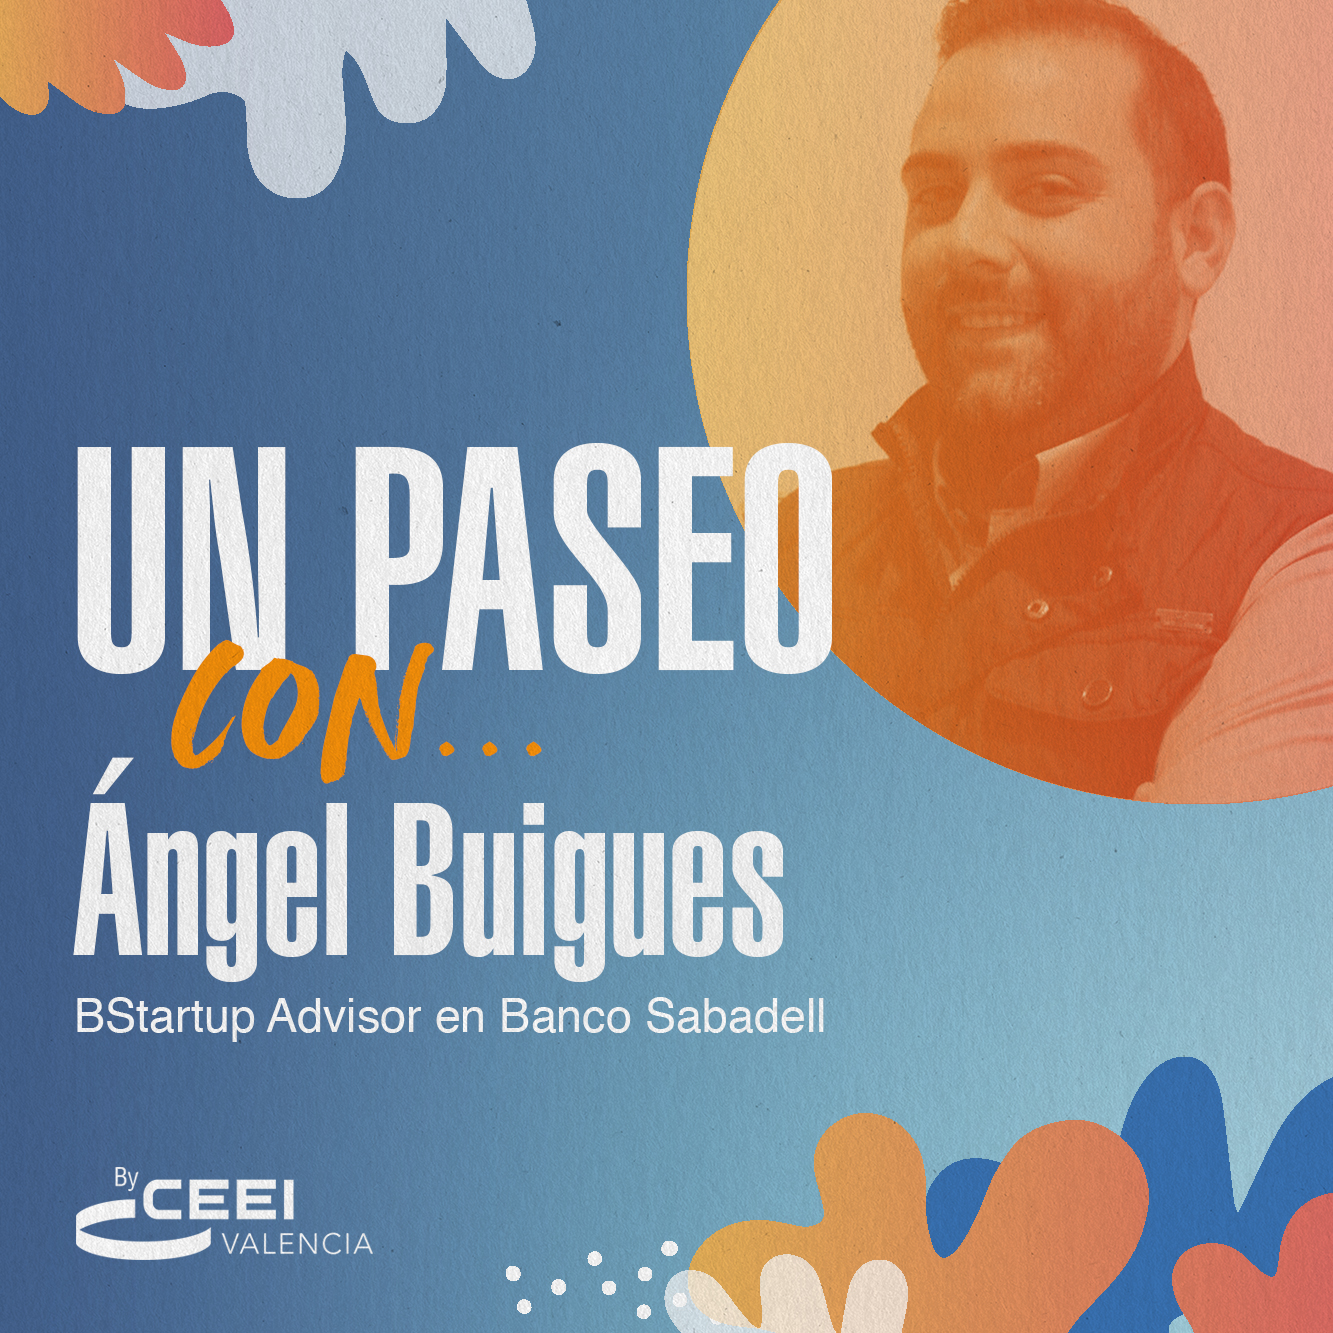 Un paseo con Ángel Buigues, BStartup Advisor en Banco Sabadell